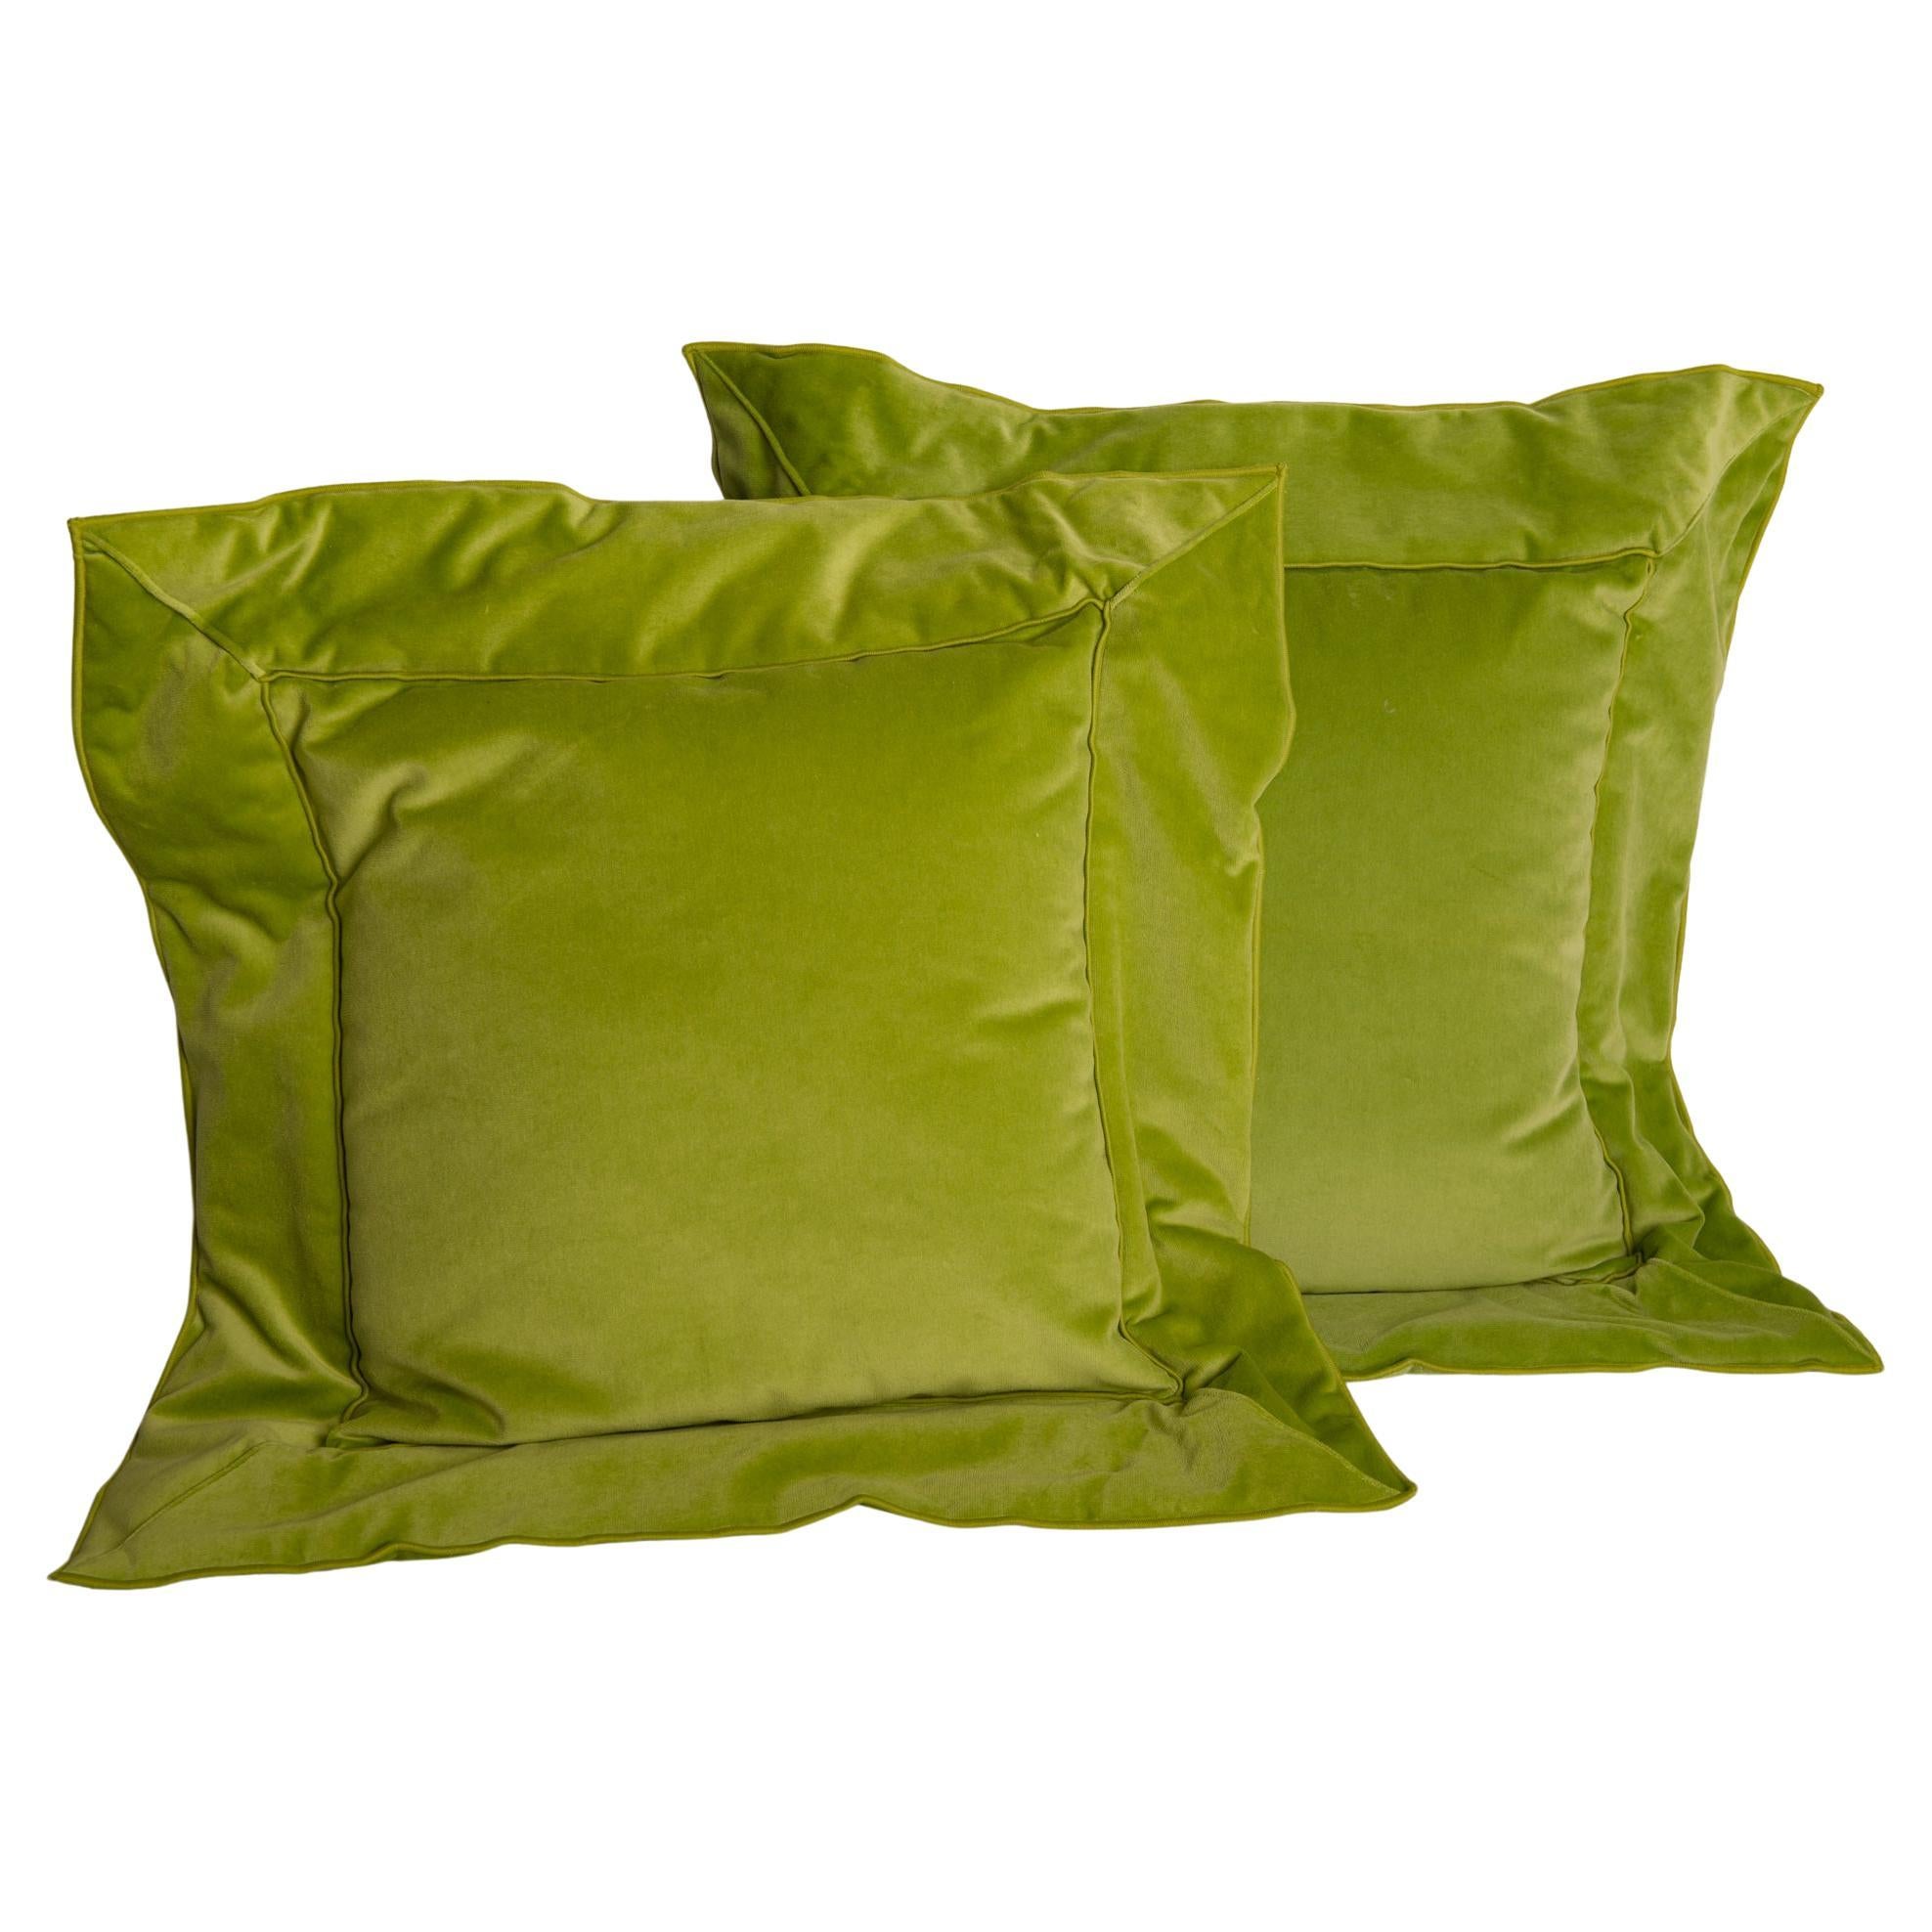 Pair of Apple Green Unusual Velvet Pillows For Sale